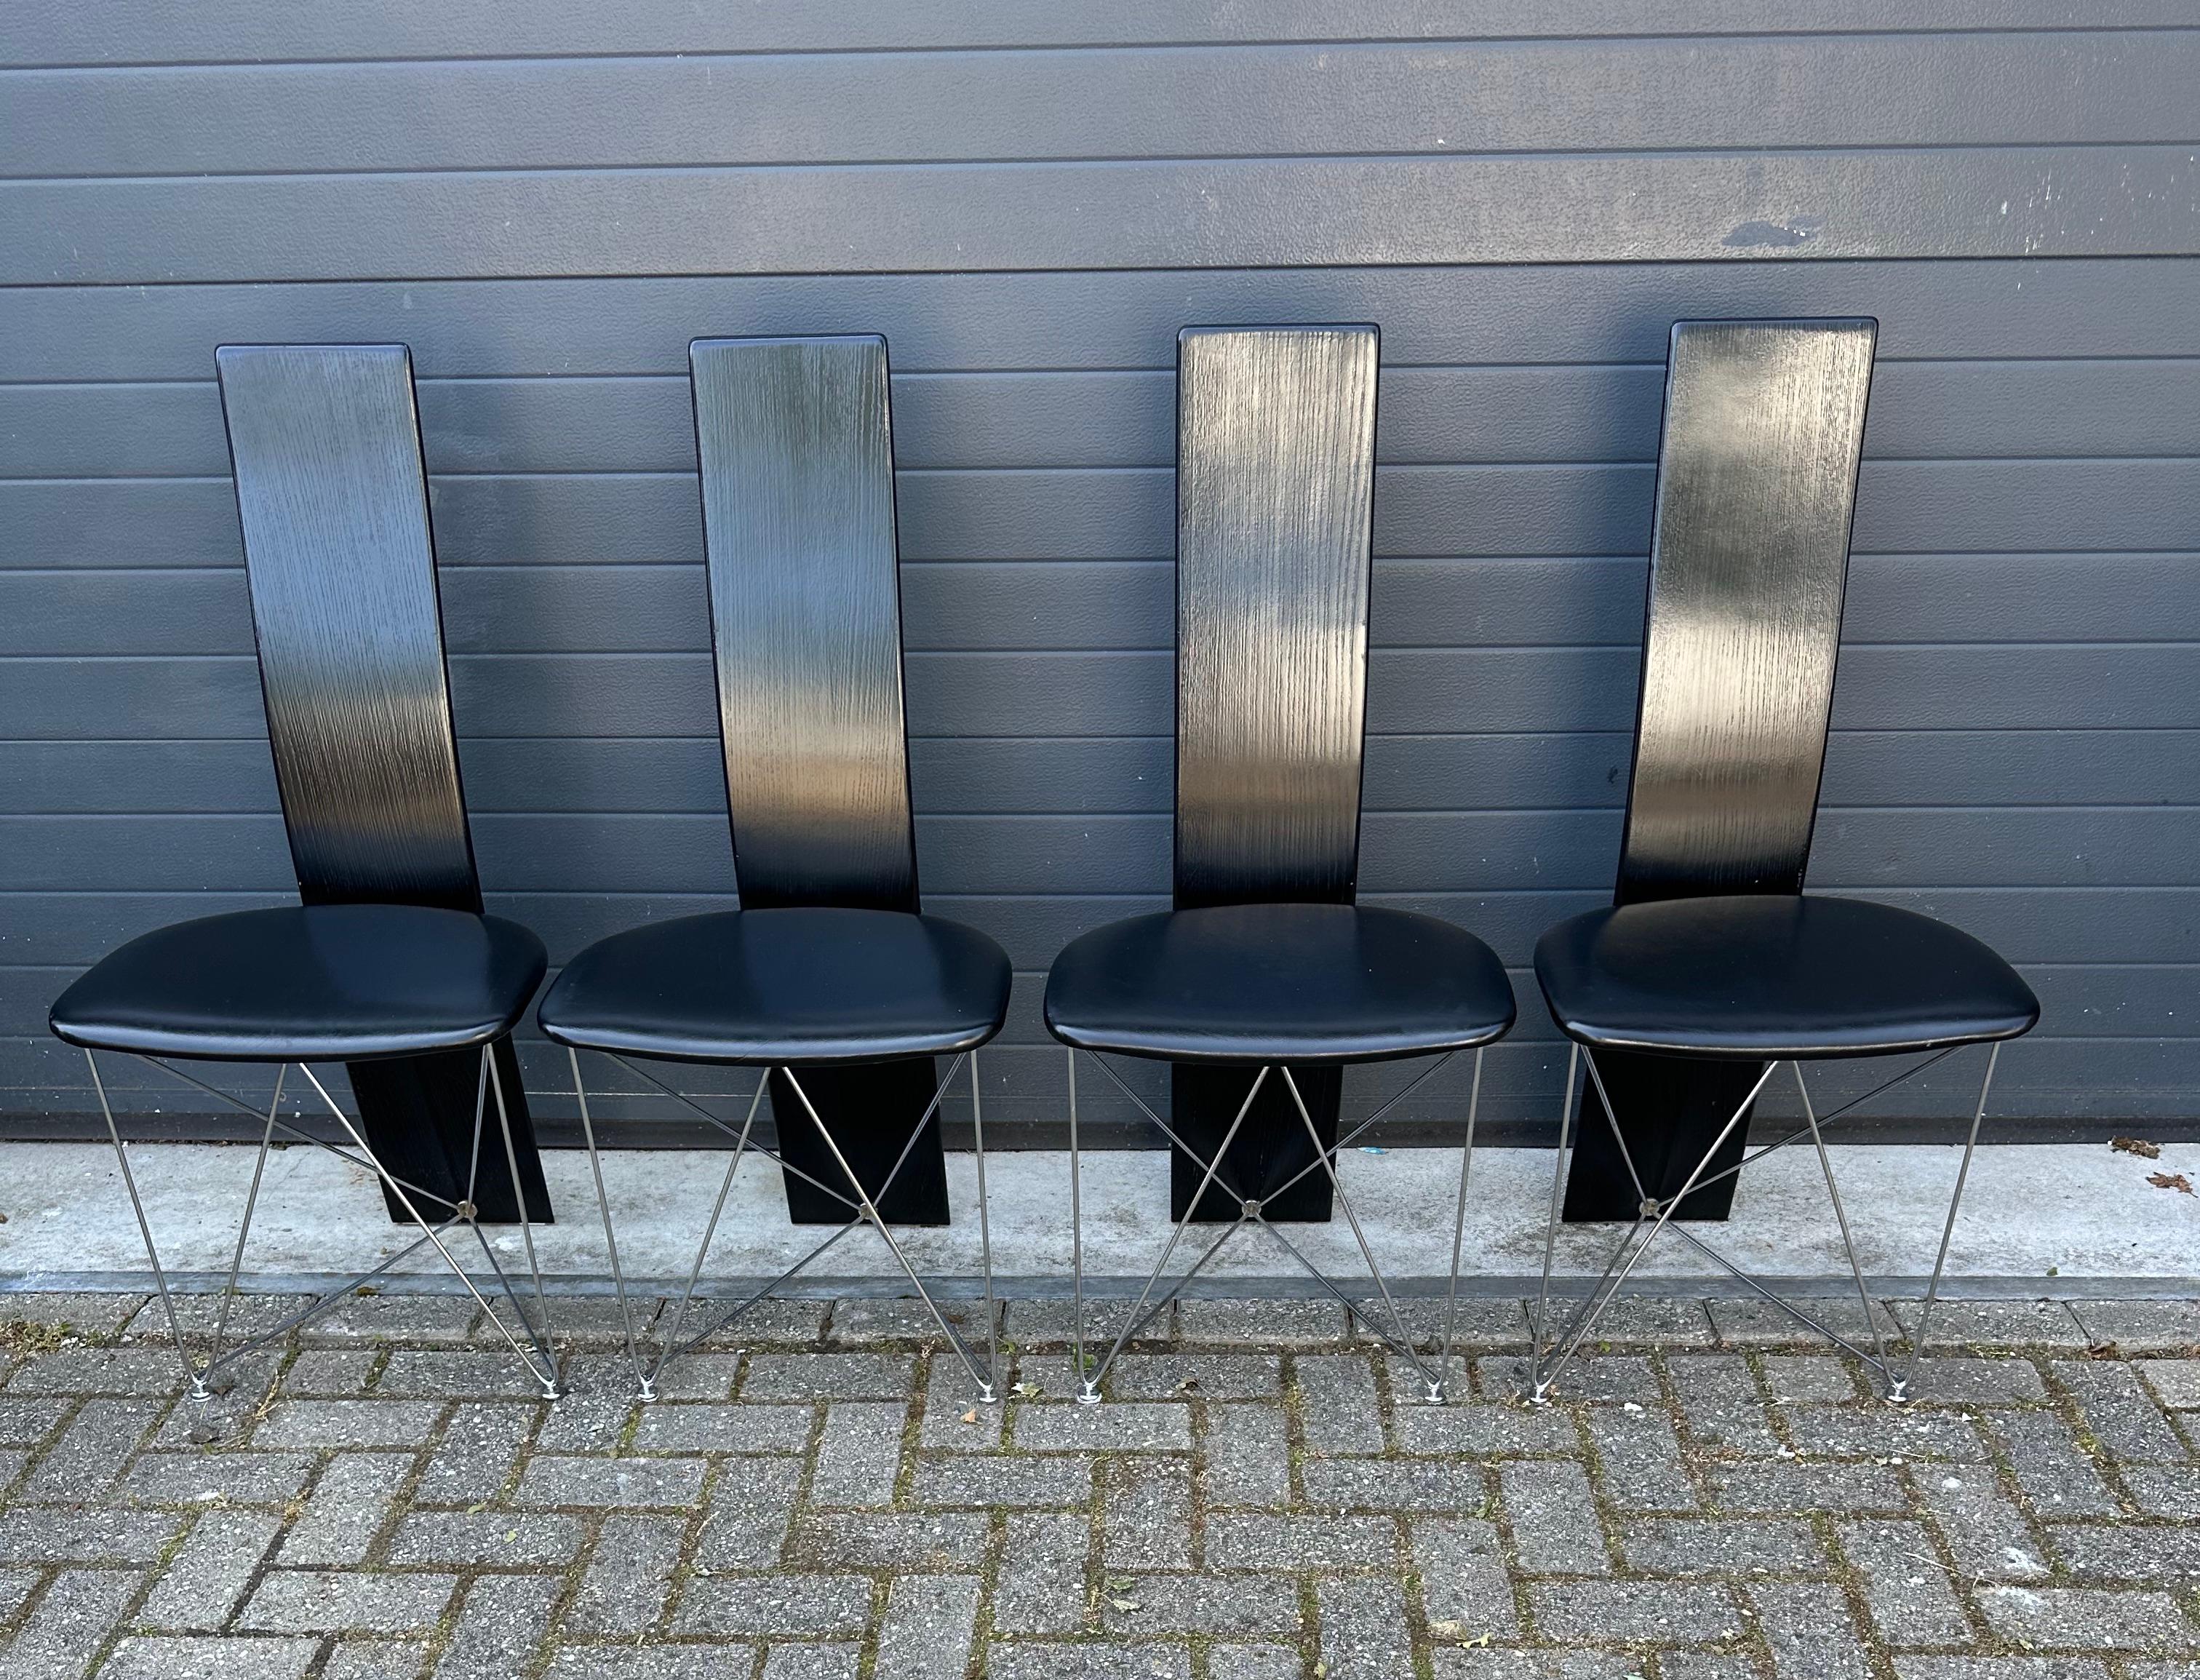 Seltener und völlig originaler Satz von vier Post Modern Design Esszimmerstühlen.

Norwegisches Design, Modell: Concorde. entworfen von Torstein Flatøy für Bahus.

Dieses außergewöhnlich schöne und unserer Meinung nach sehr seltene Set von sehr